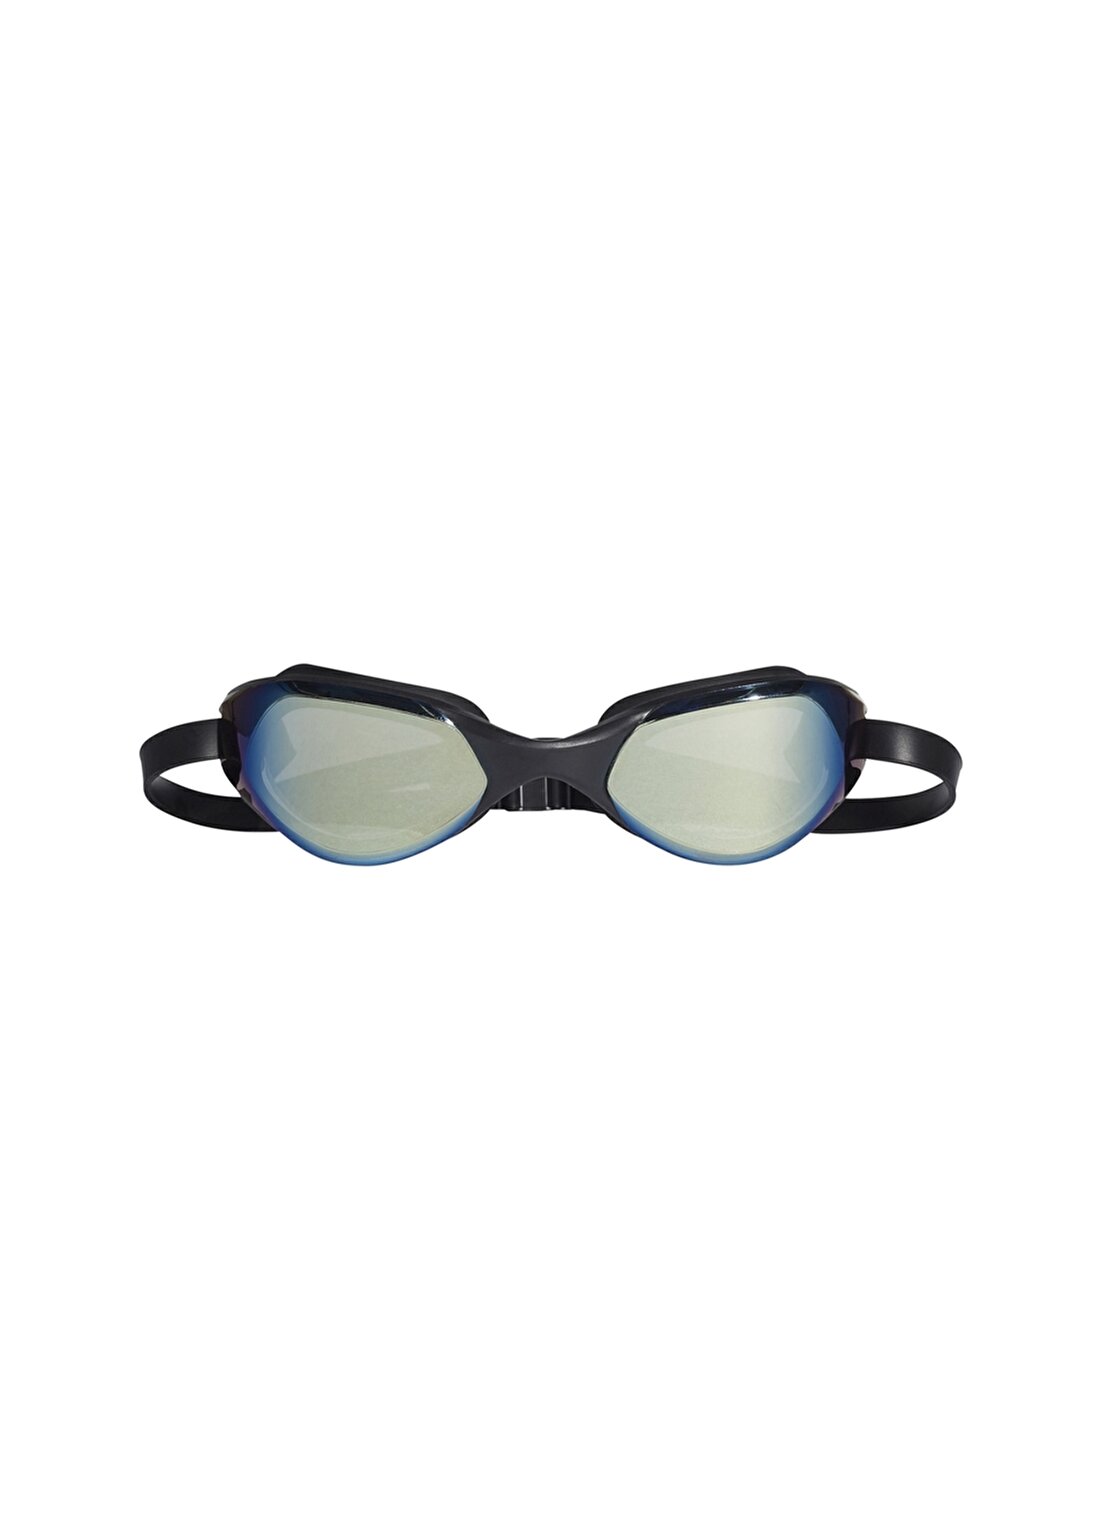 Adidas Yeşil Yüzücü Gözlüğü BR1117 PERSISTAR C